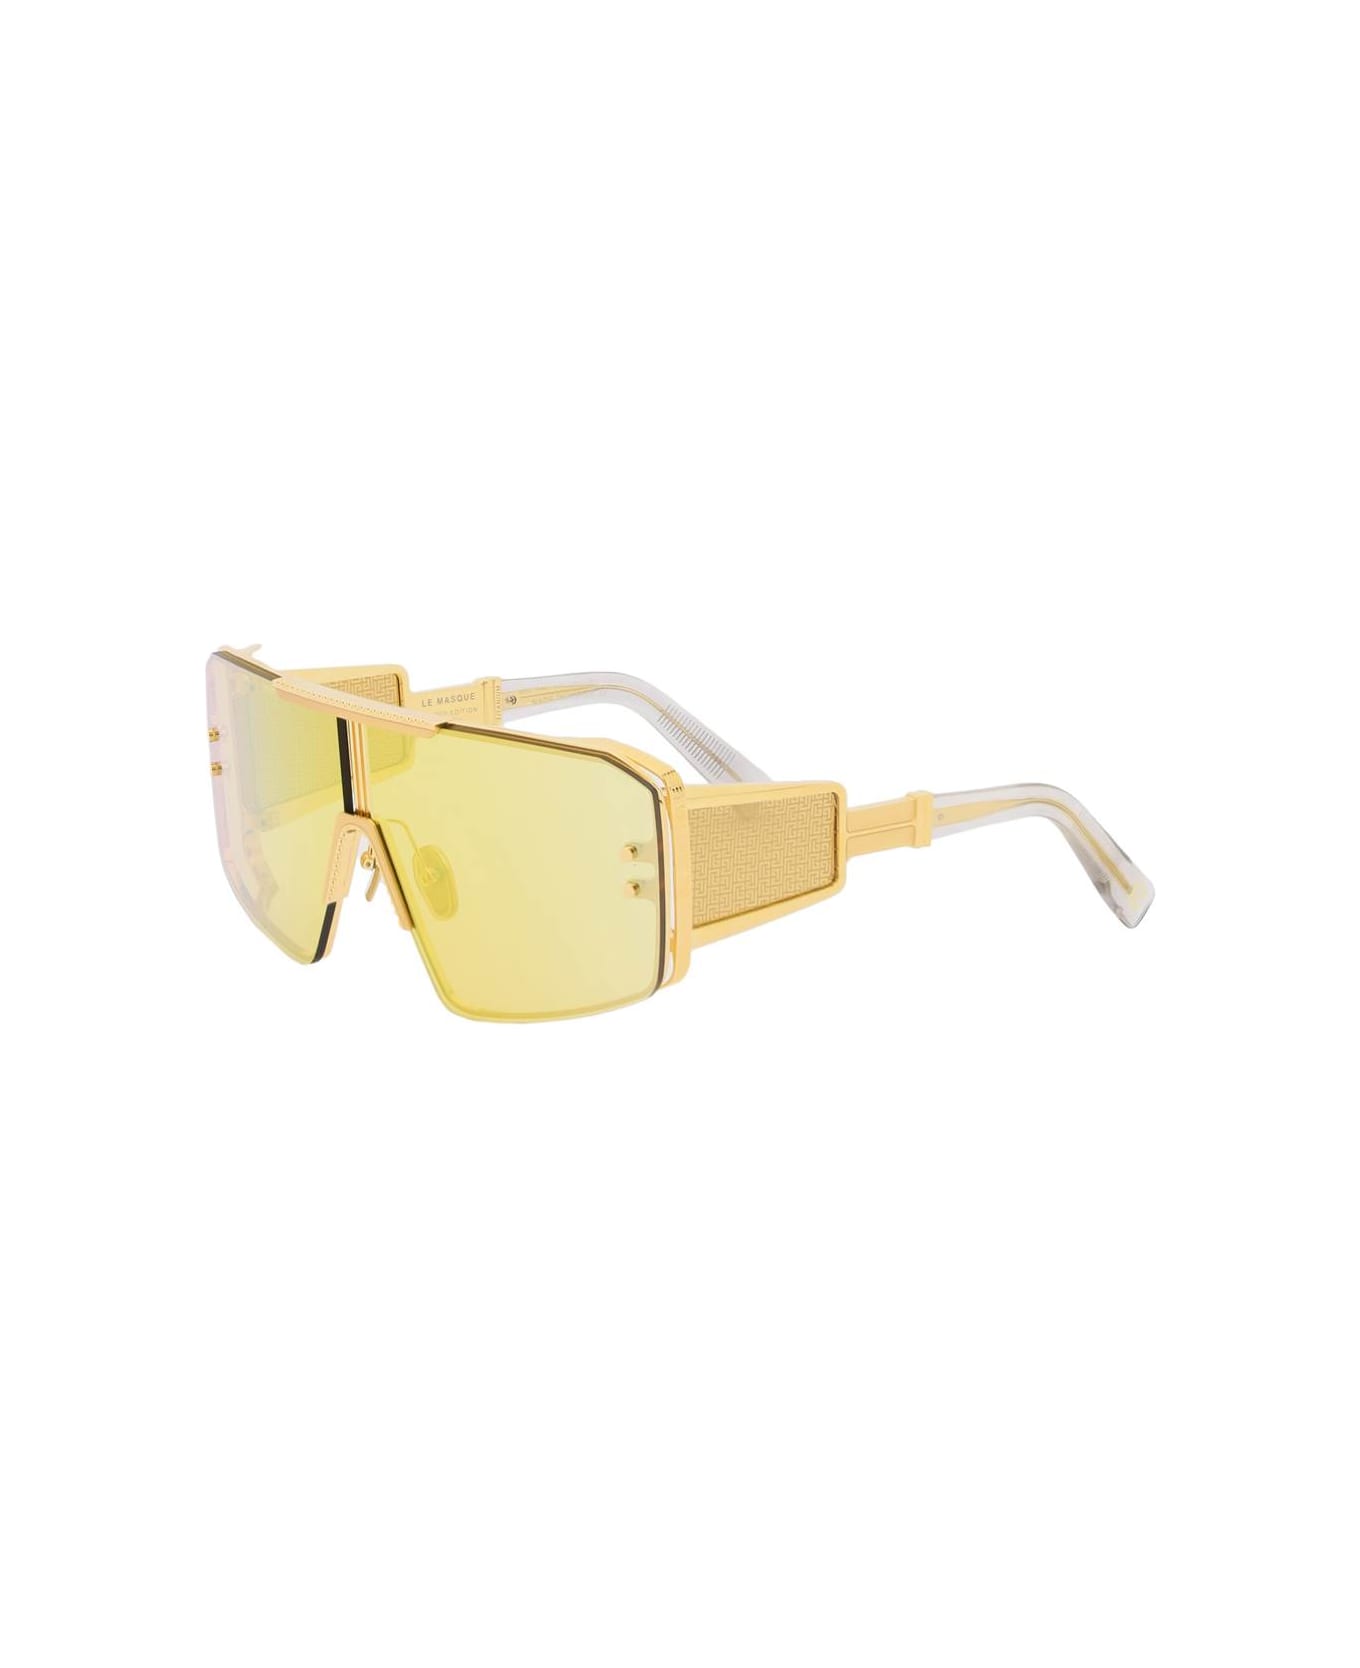 Balmain Le Masque Sunglasses - GOLD GREY (Yellow)